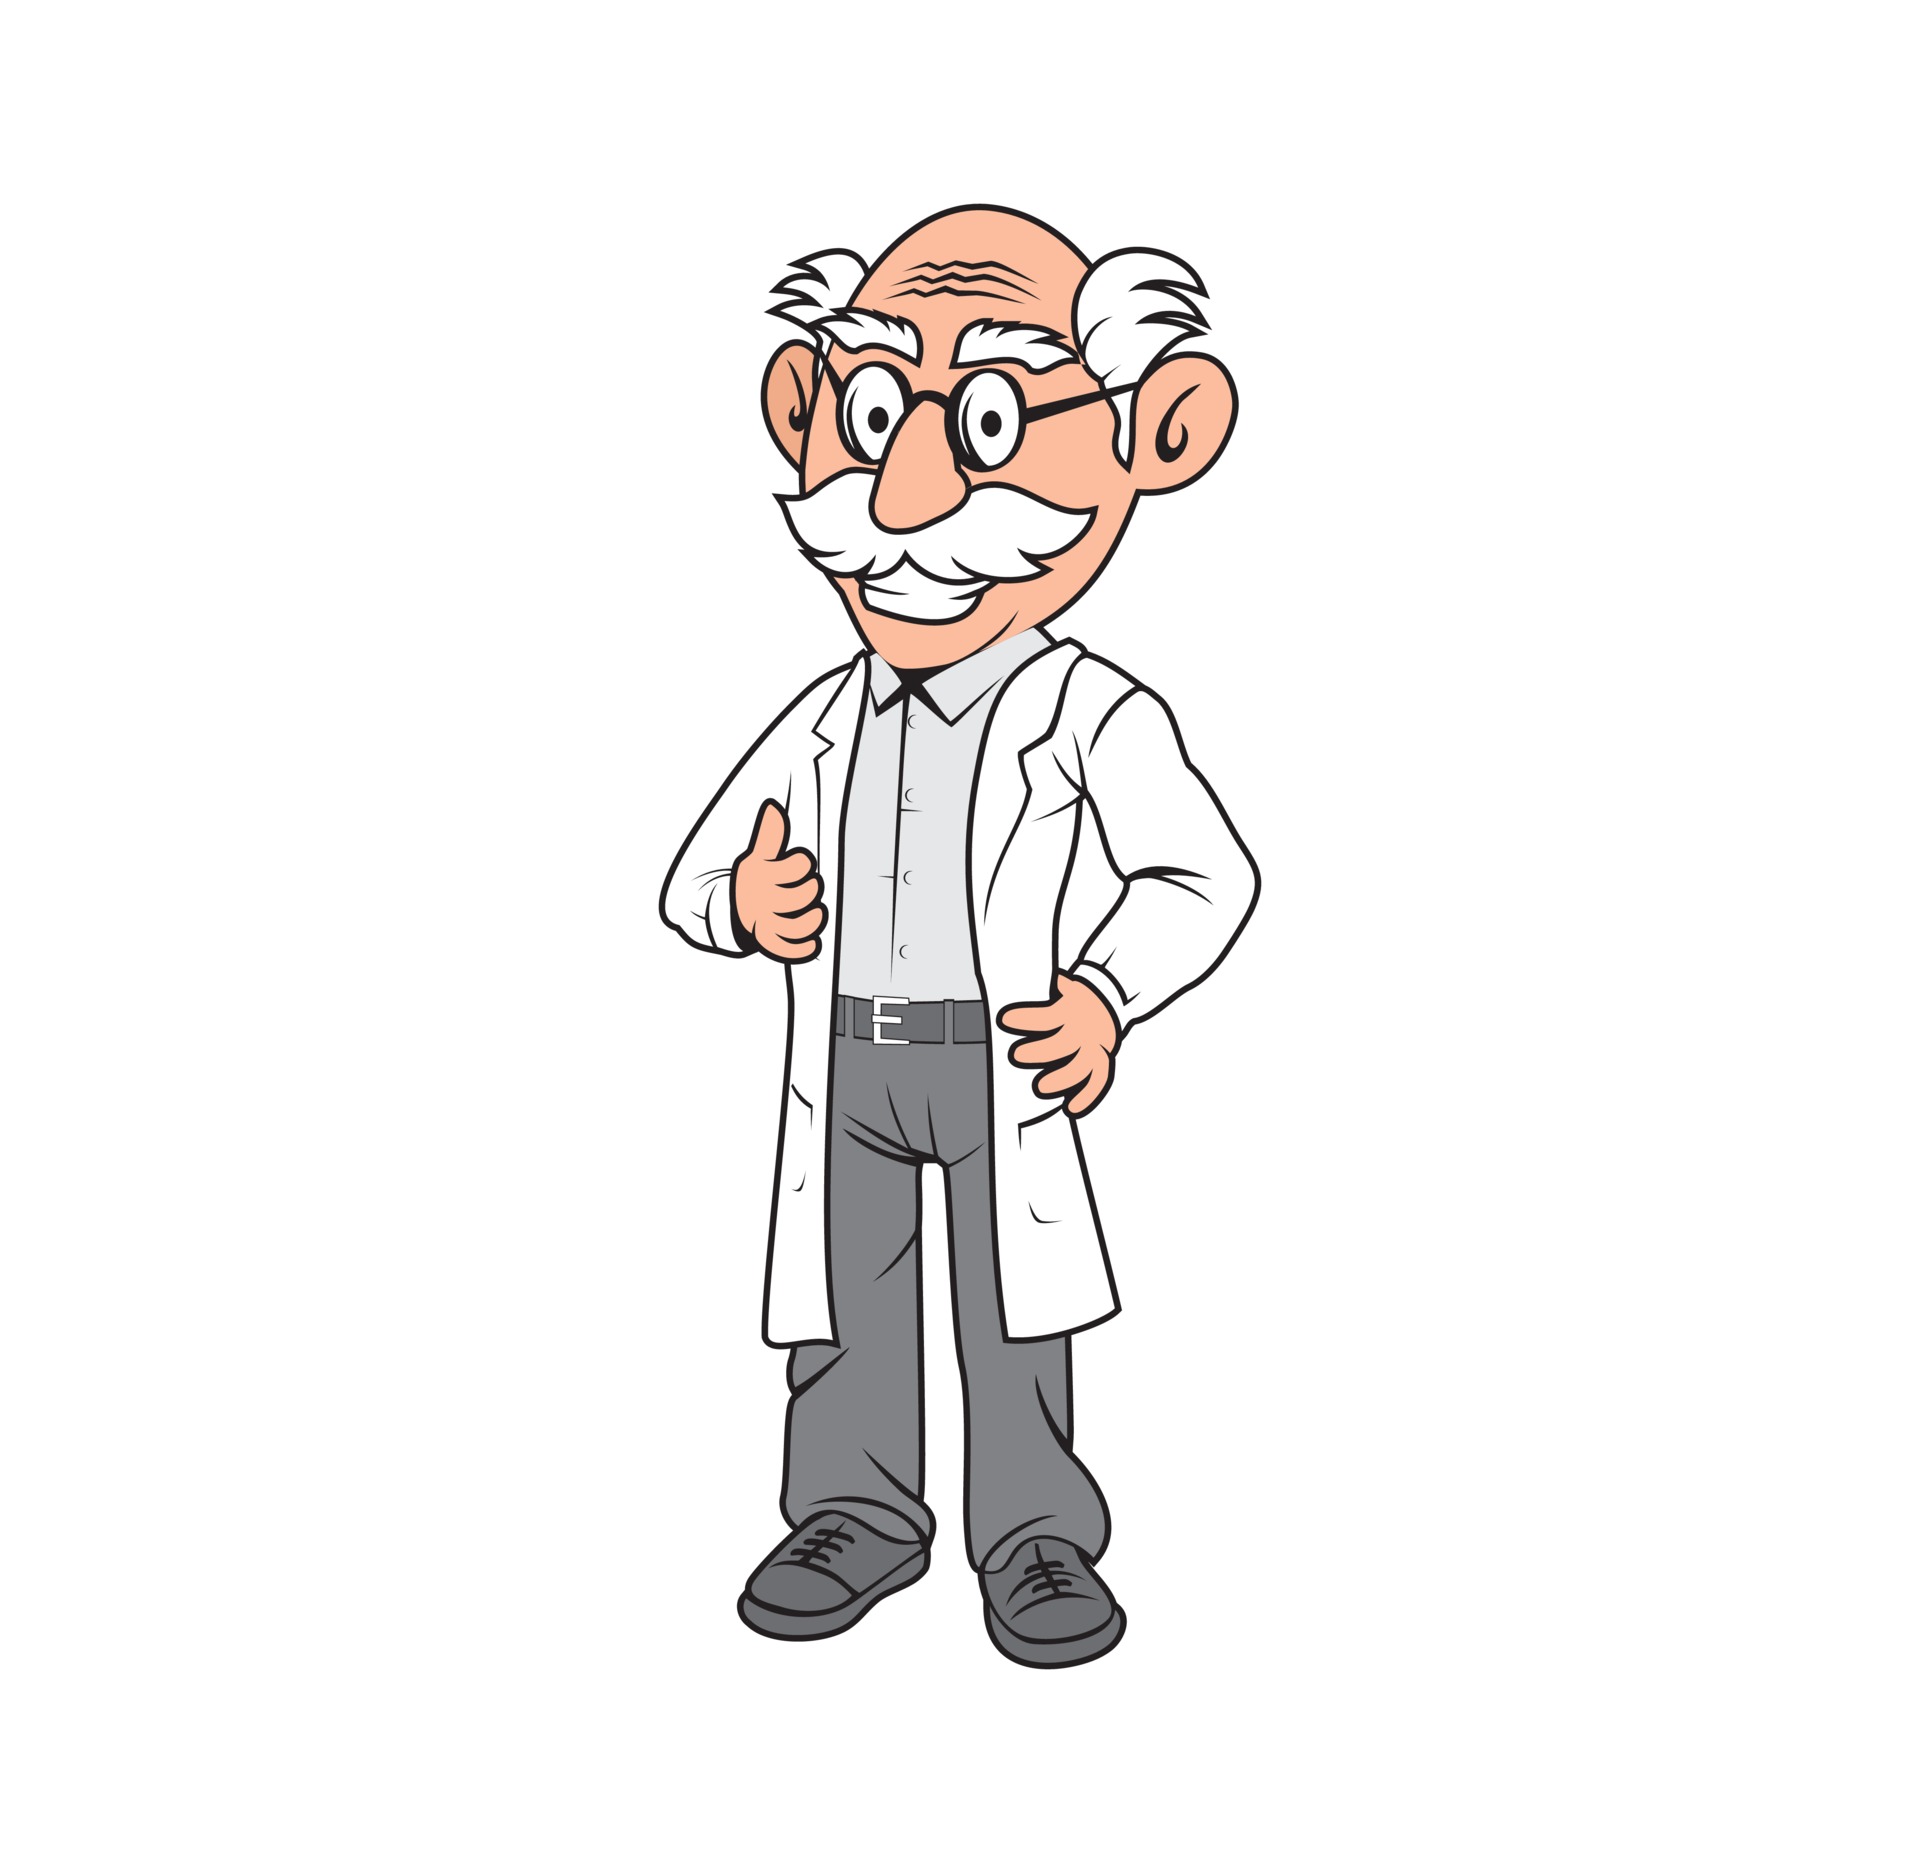 Professor old man cartoon character design 2285849 Vector Art at Vecteezy